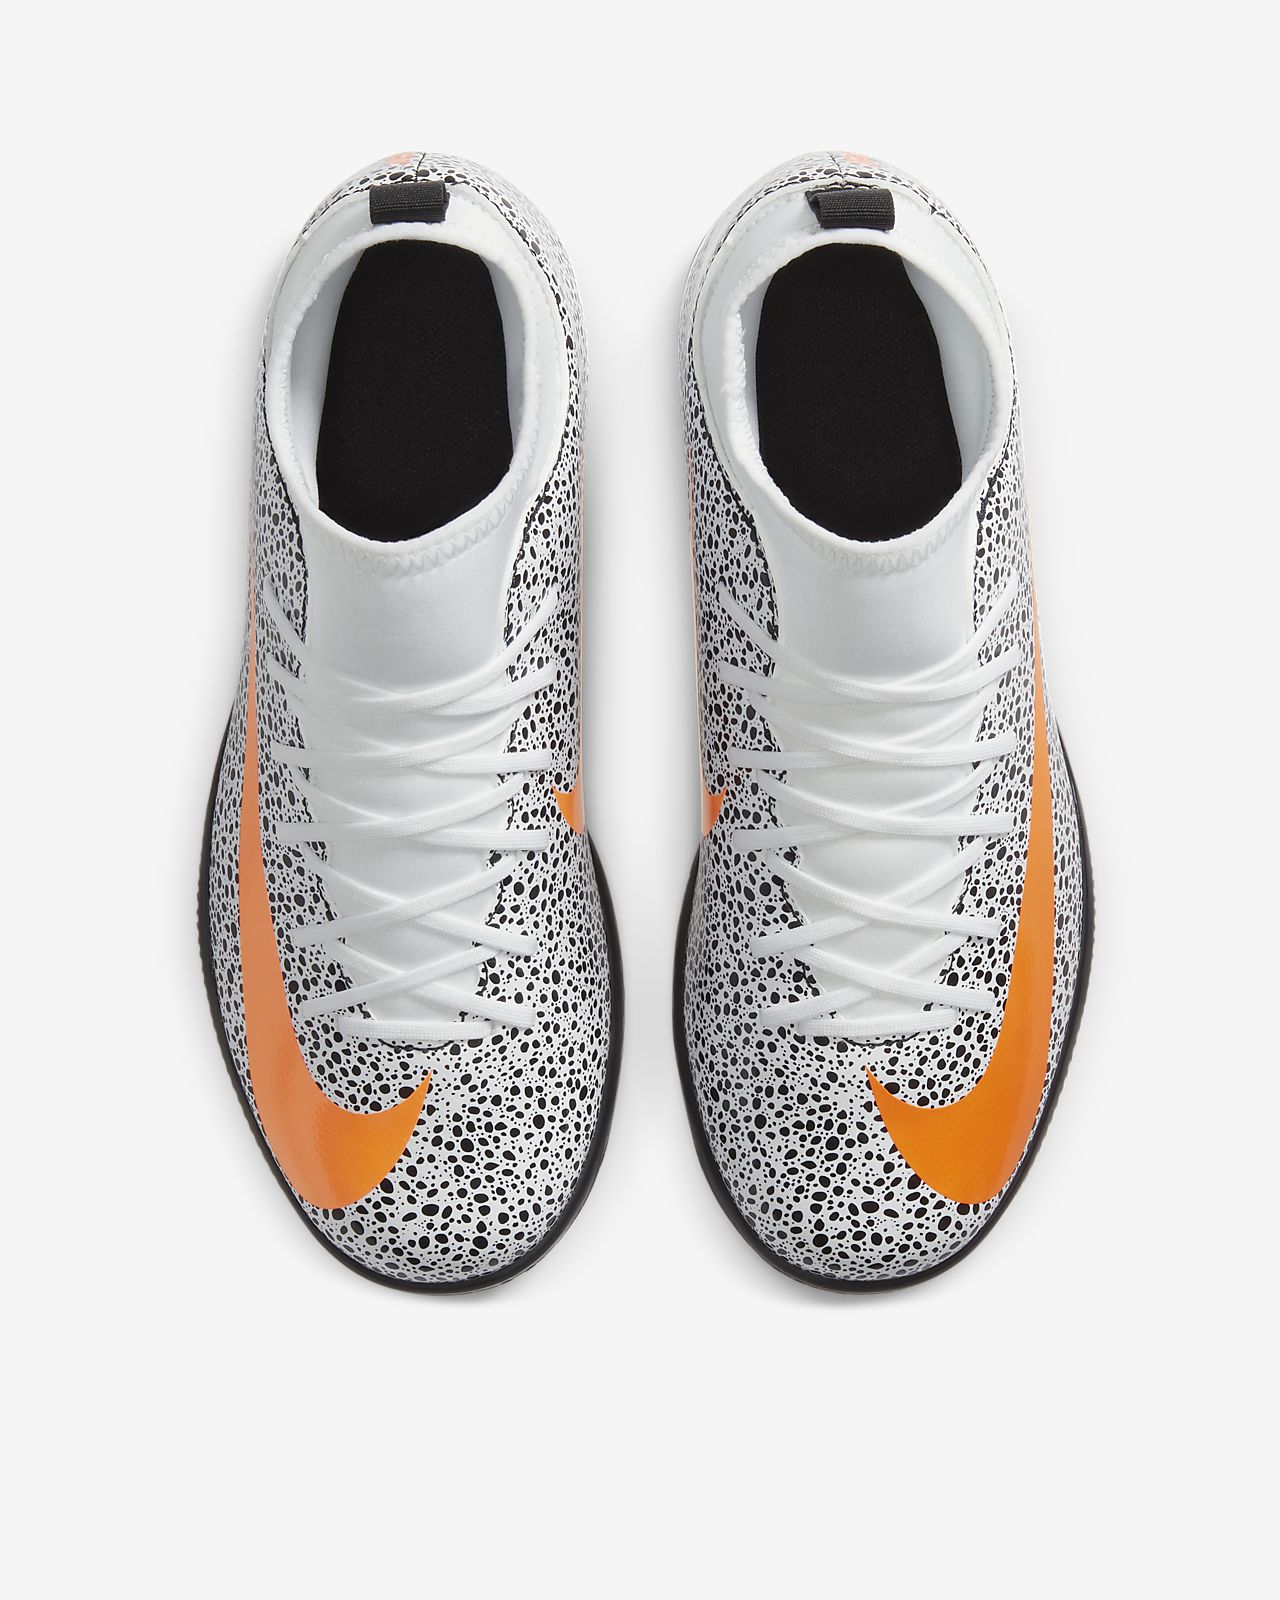 Nike Mercurial Vapor VI Safari FG Soccer Shoes CR7 White .